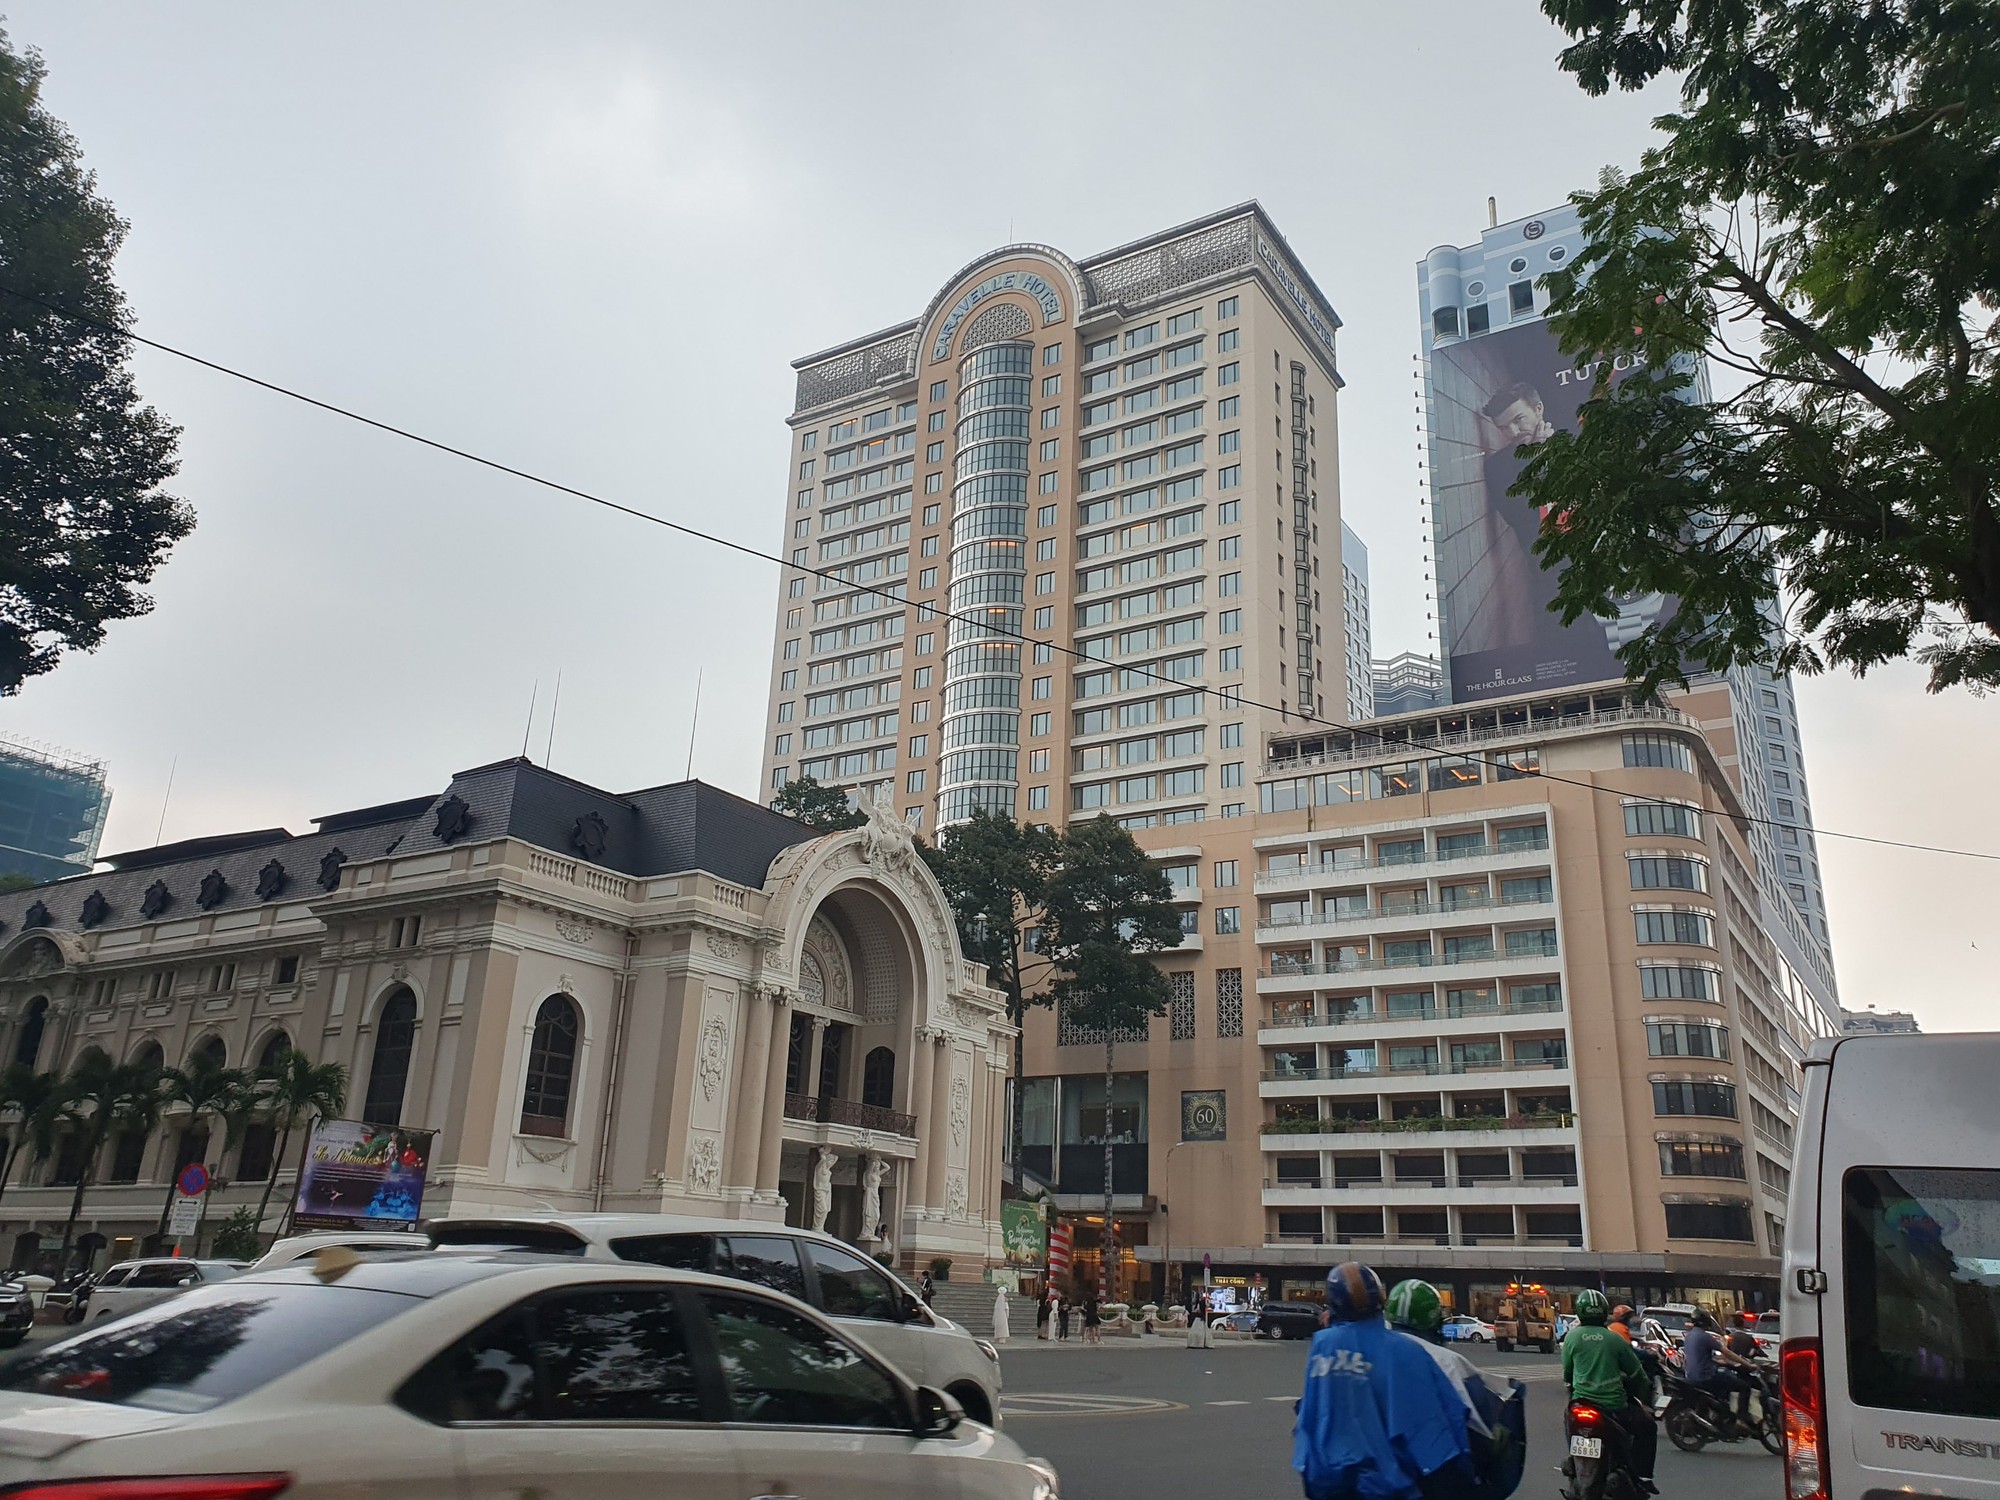 Hàng hiệu xa xỉ, khách sạn 5 sao, thiên đường mua sắm chen nhau trên con đường dát vàng ở Sài Gòn - Ảnh 4.